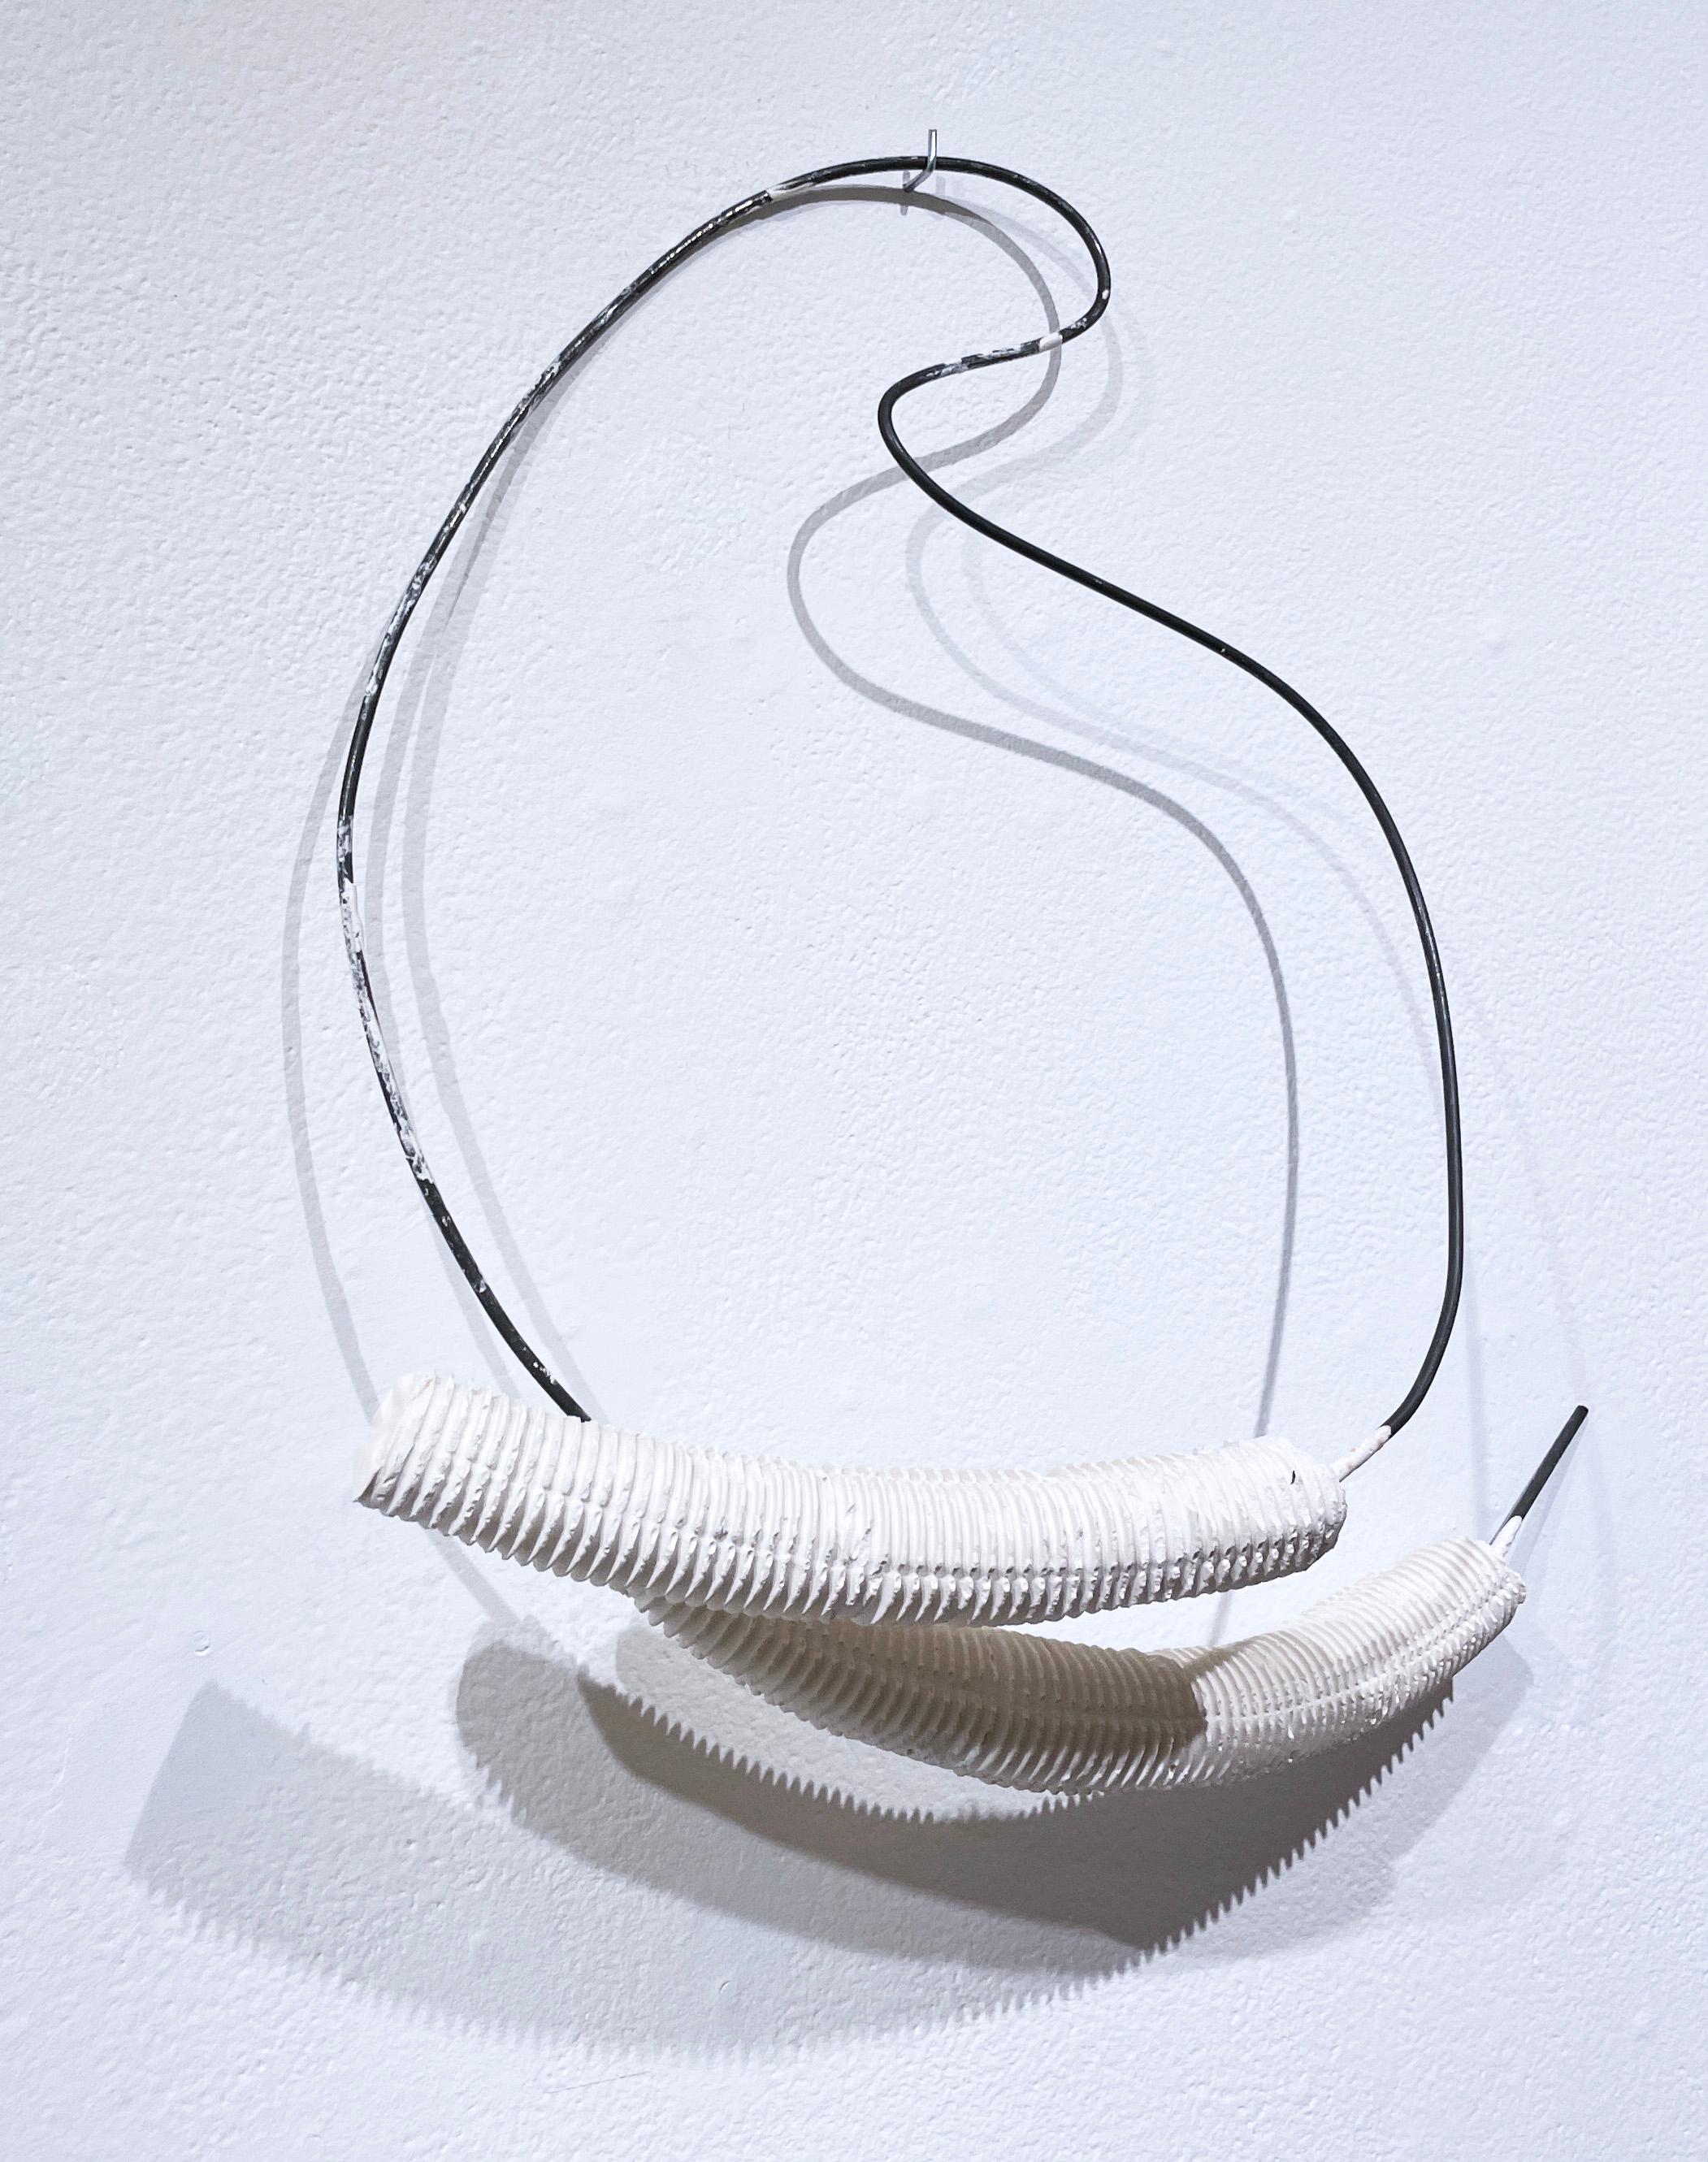 Forme en fil métallique avec pieds croisés (2021), sculpture abstraite hydrocale blanche, métal - Violet Abstract Sculpture par Dena Paige Fischer